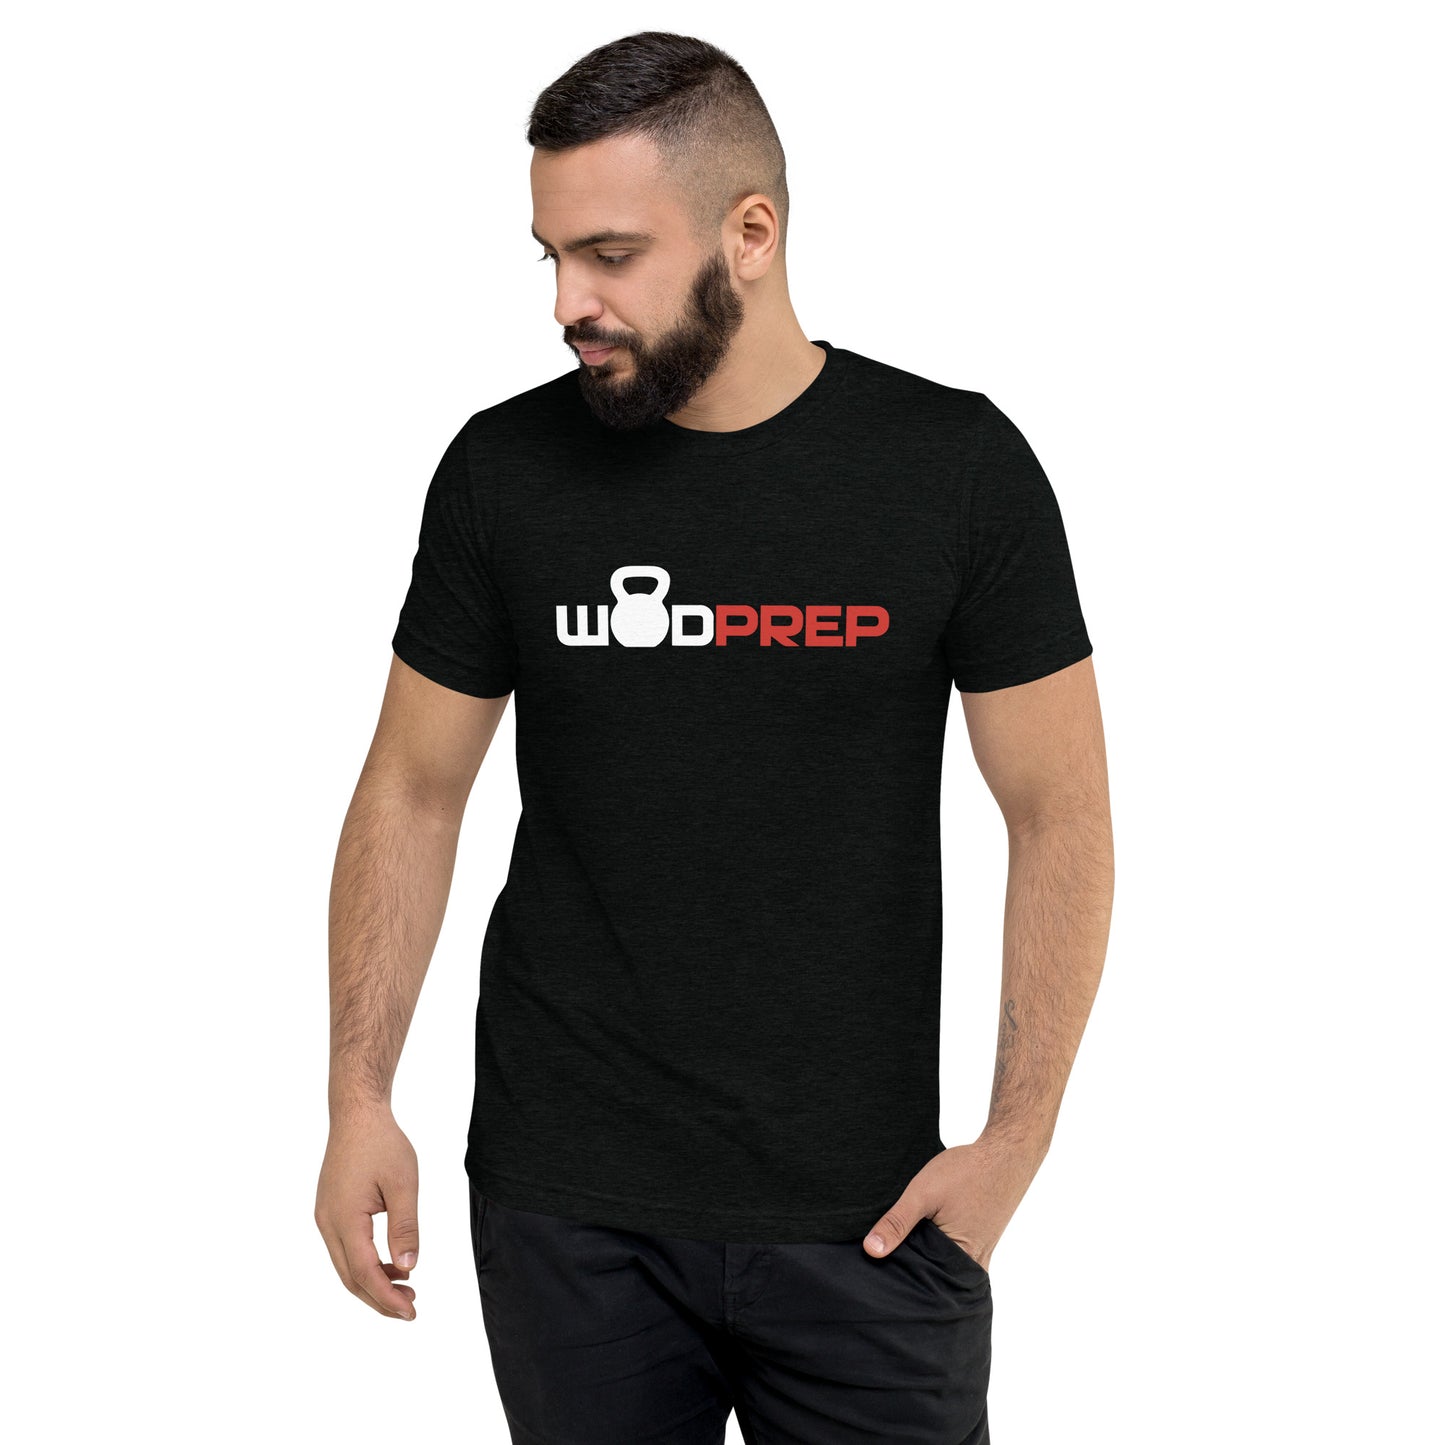 WODprep "OG" T-Shirt